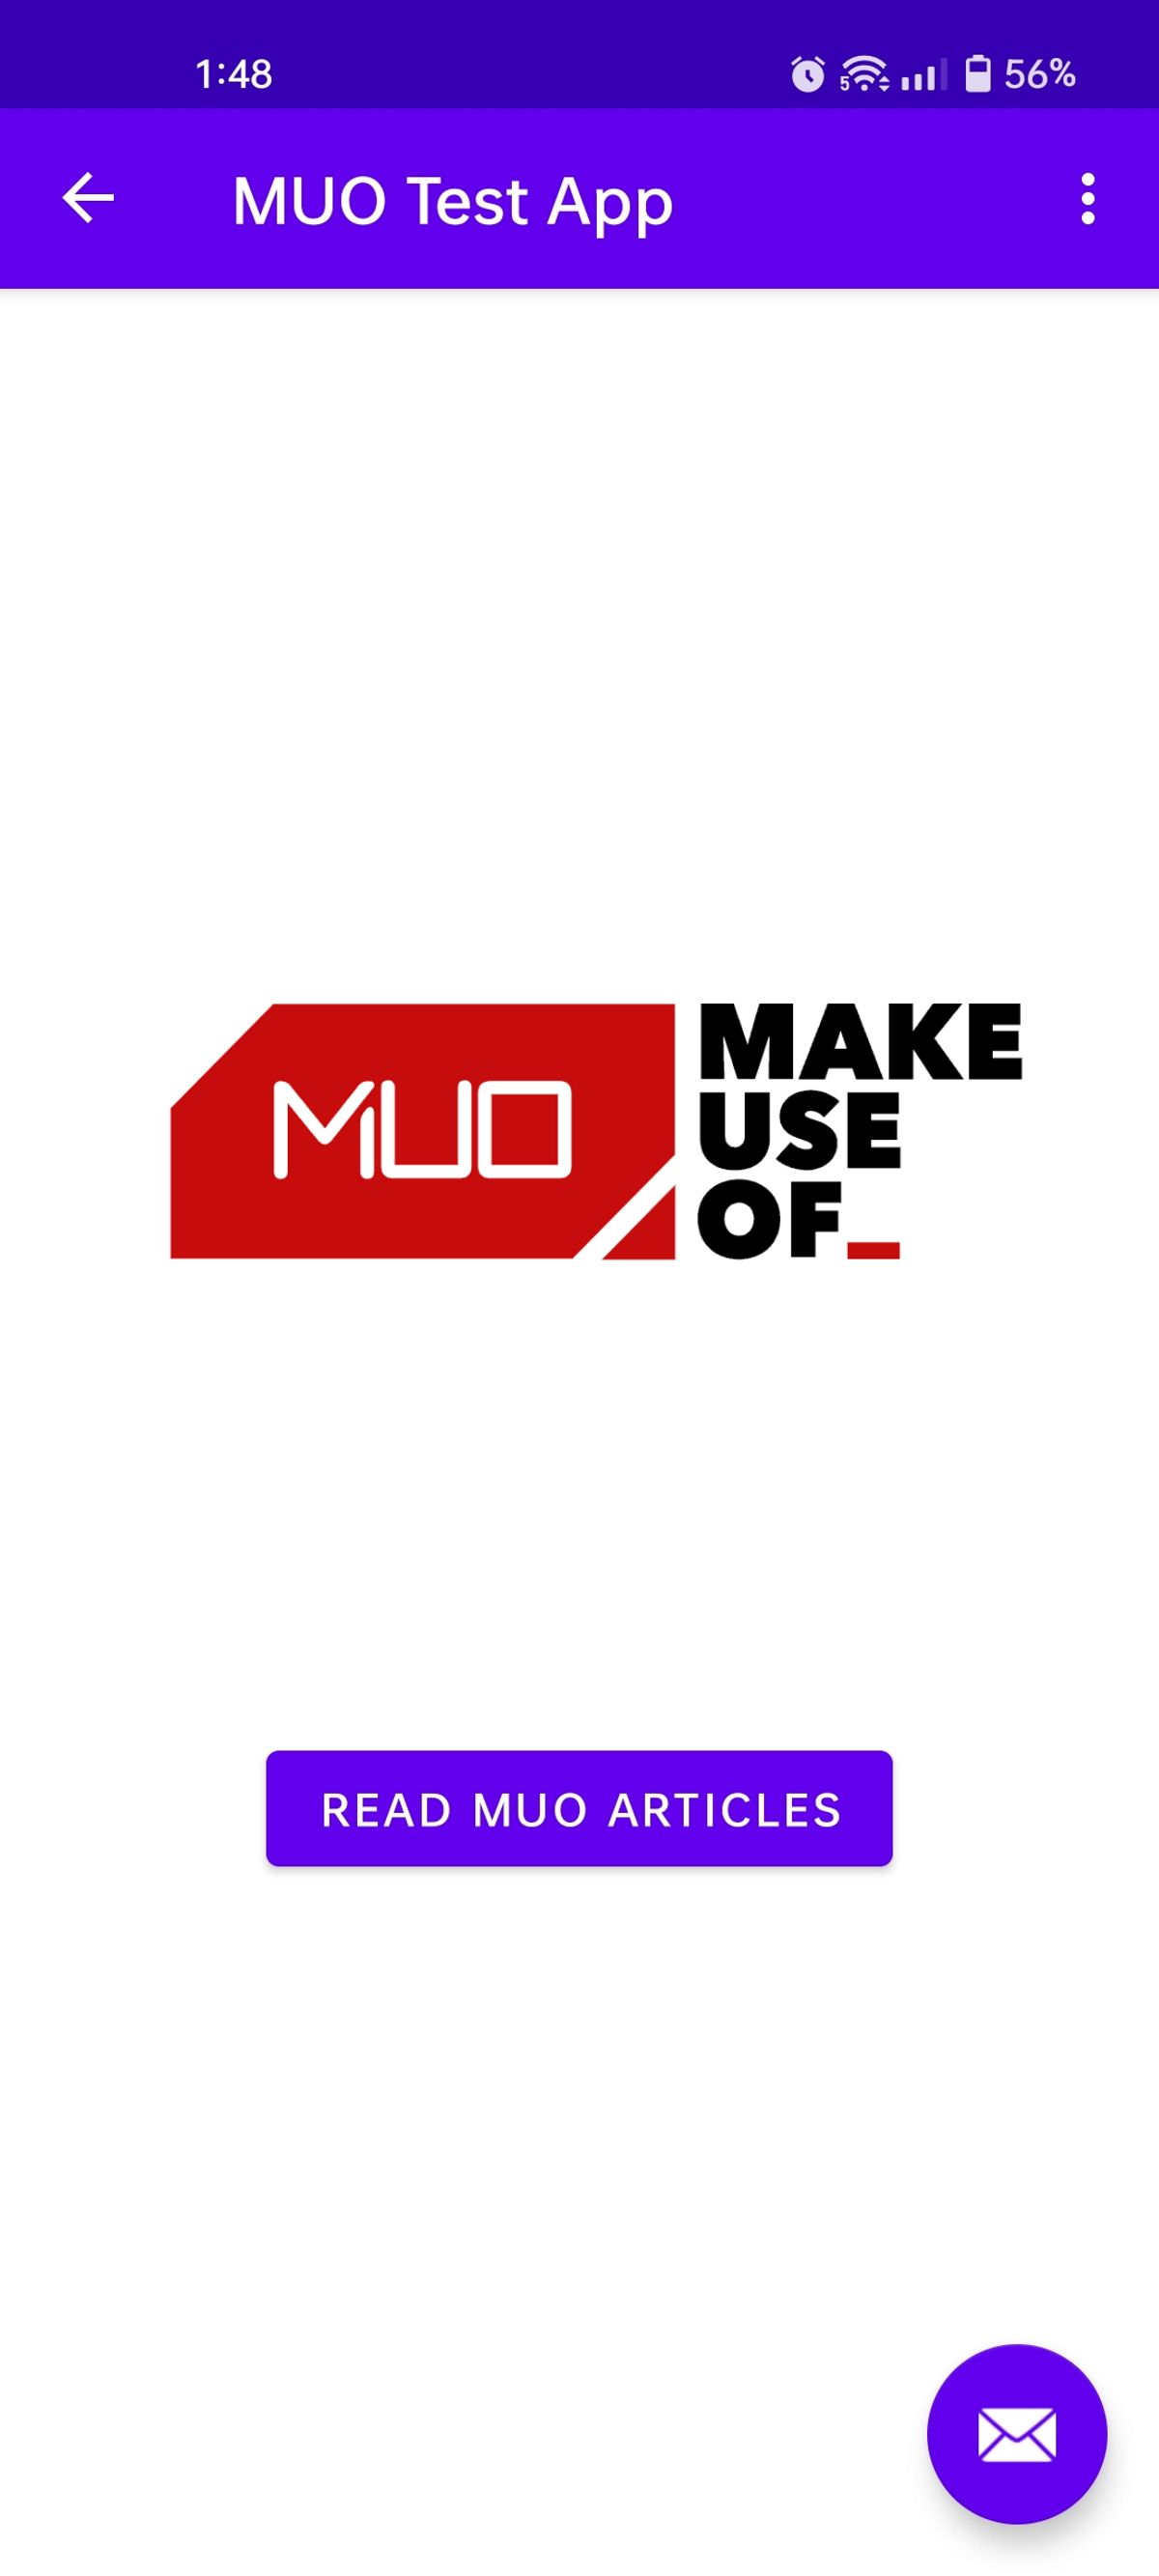 A MUO test app screen